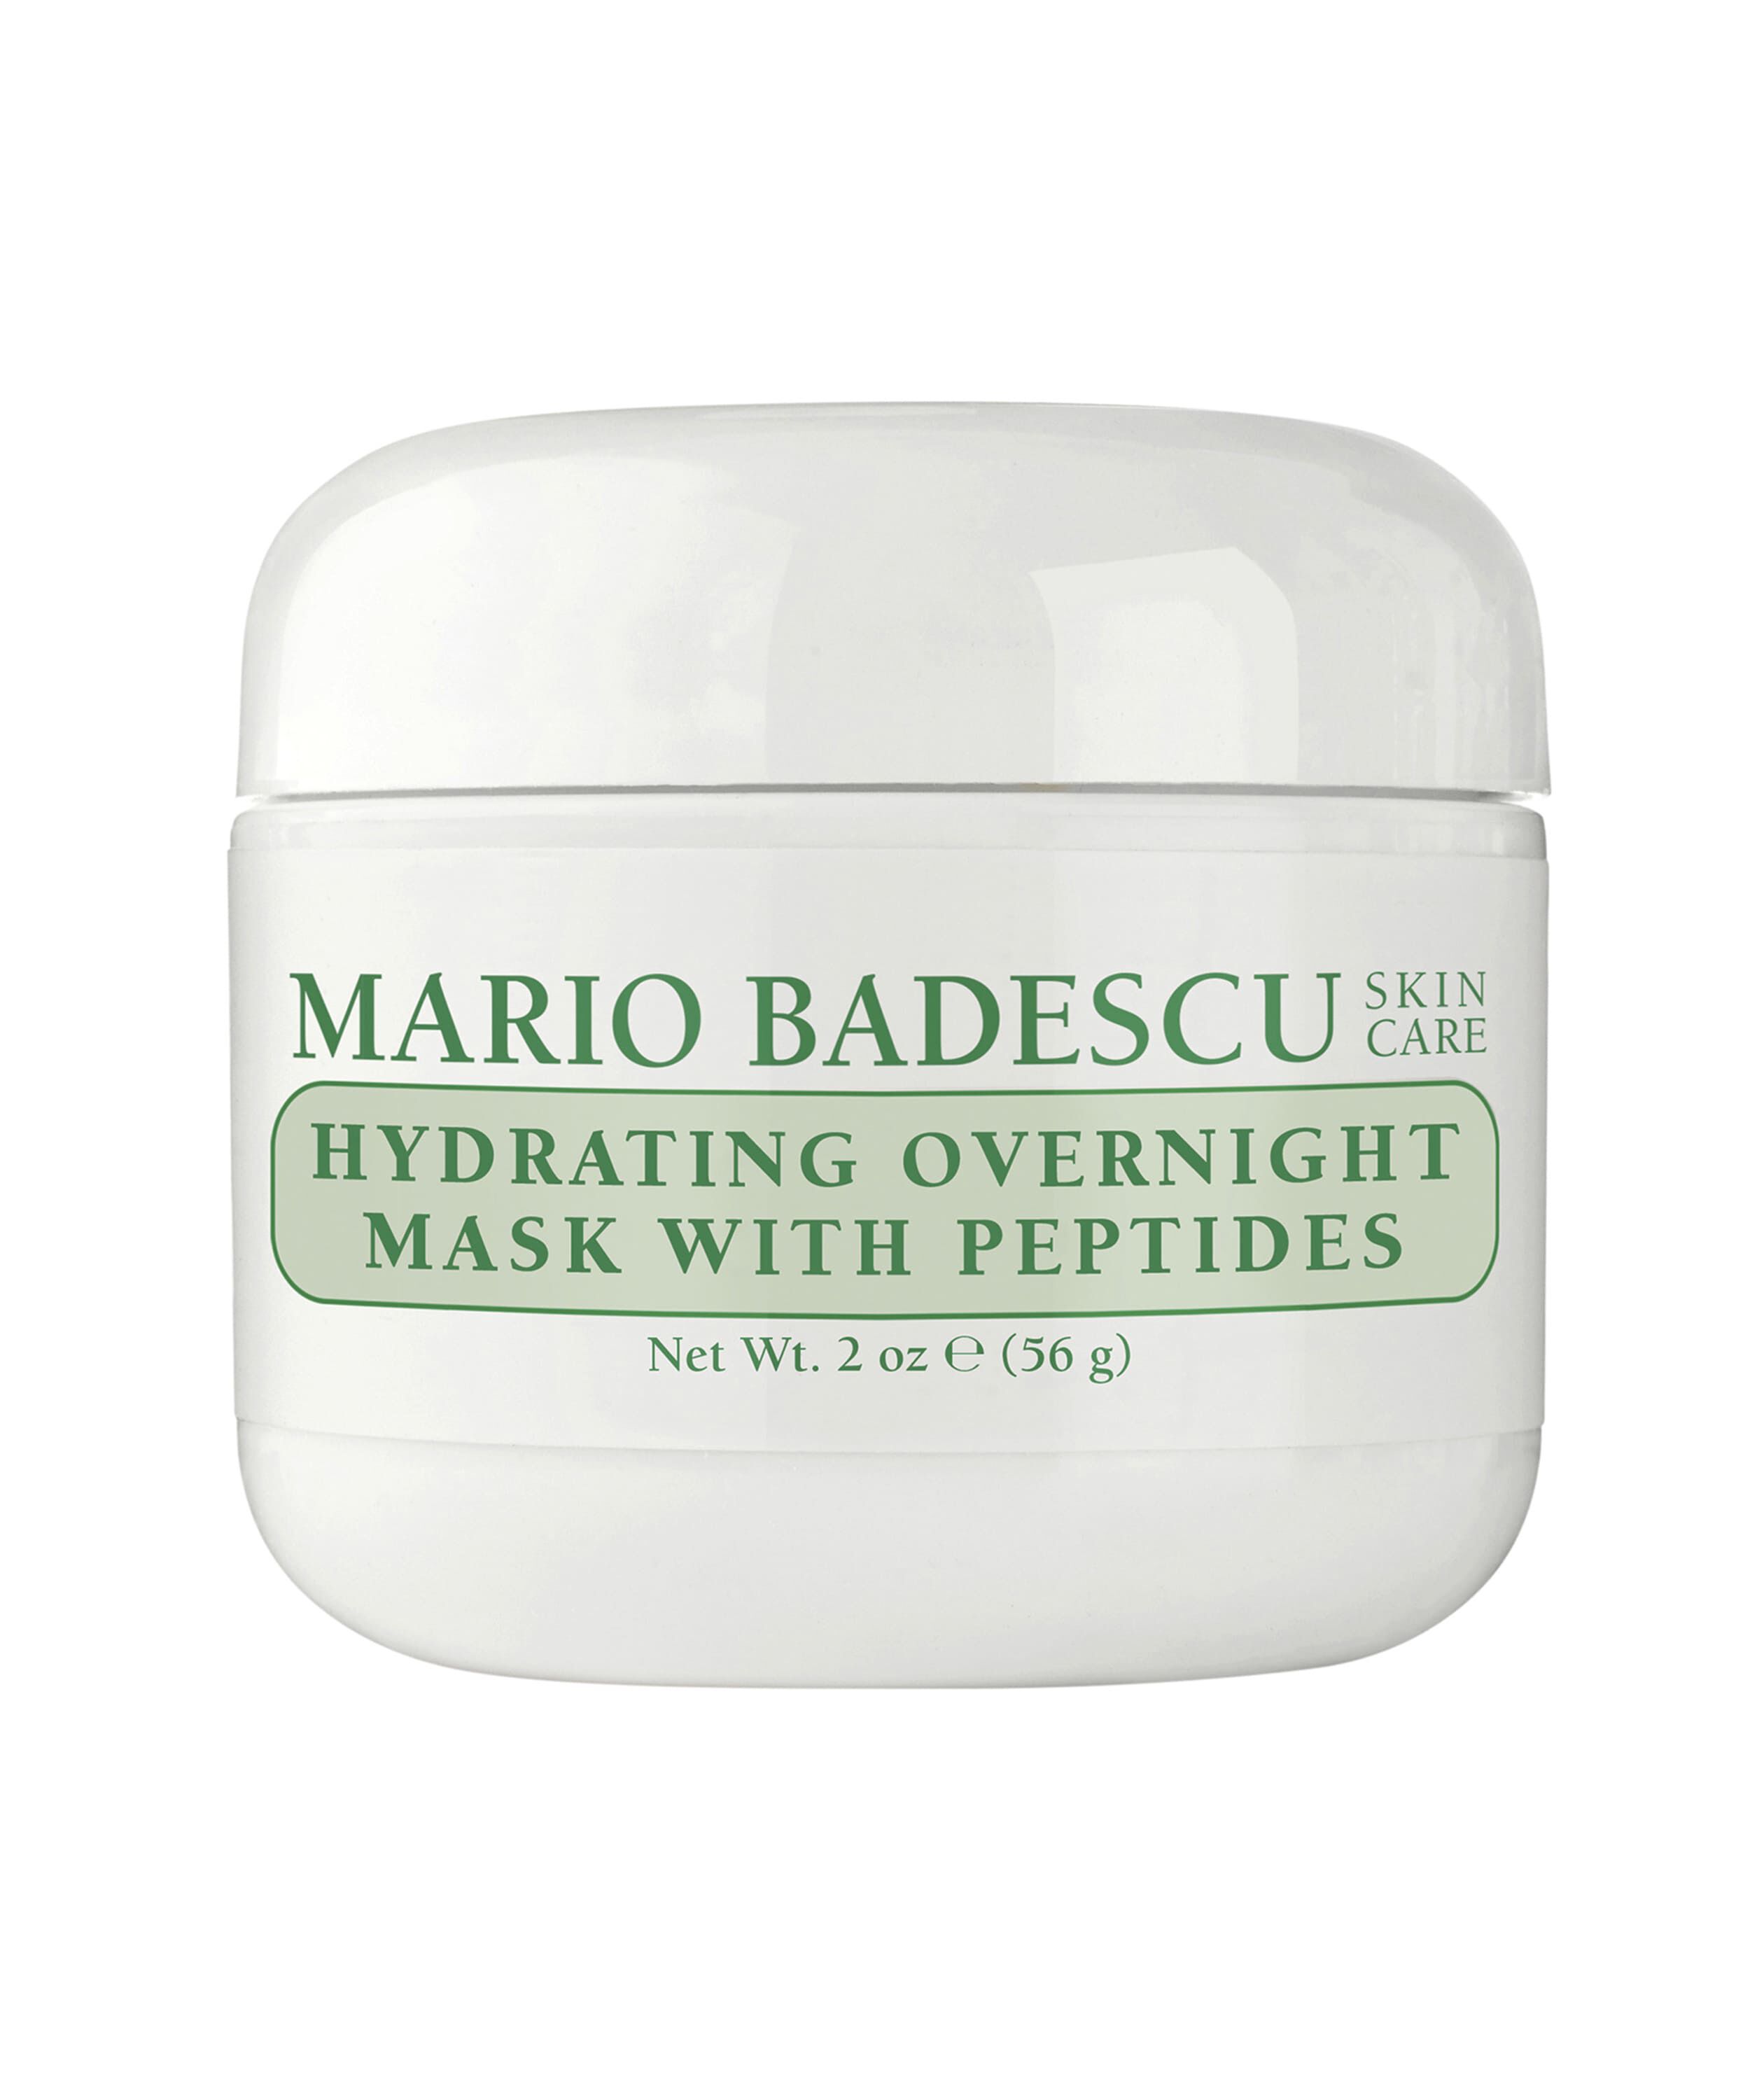 Увлажняющая антивозрастная маска для лица на ночь Mario Badescu, 56 гр маска для лица sampar paris маска для лица ночная антивозрастная